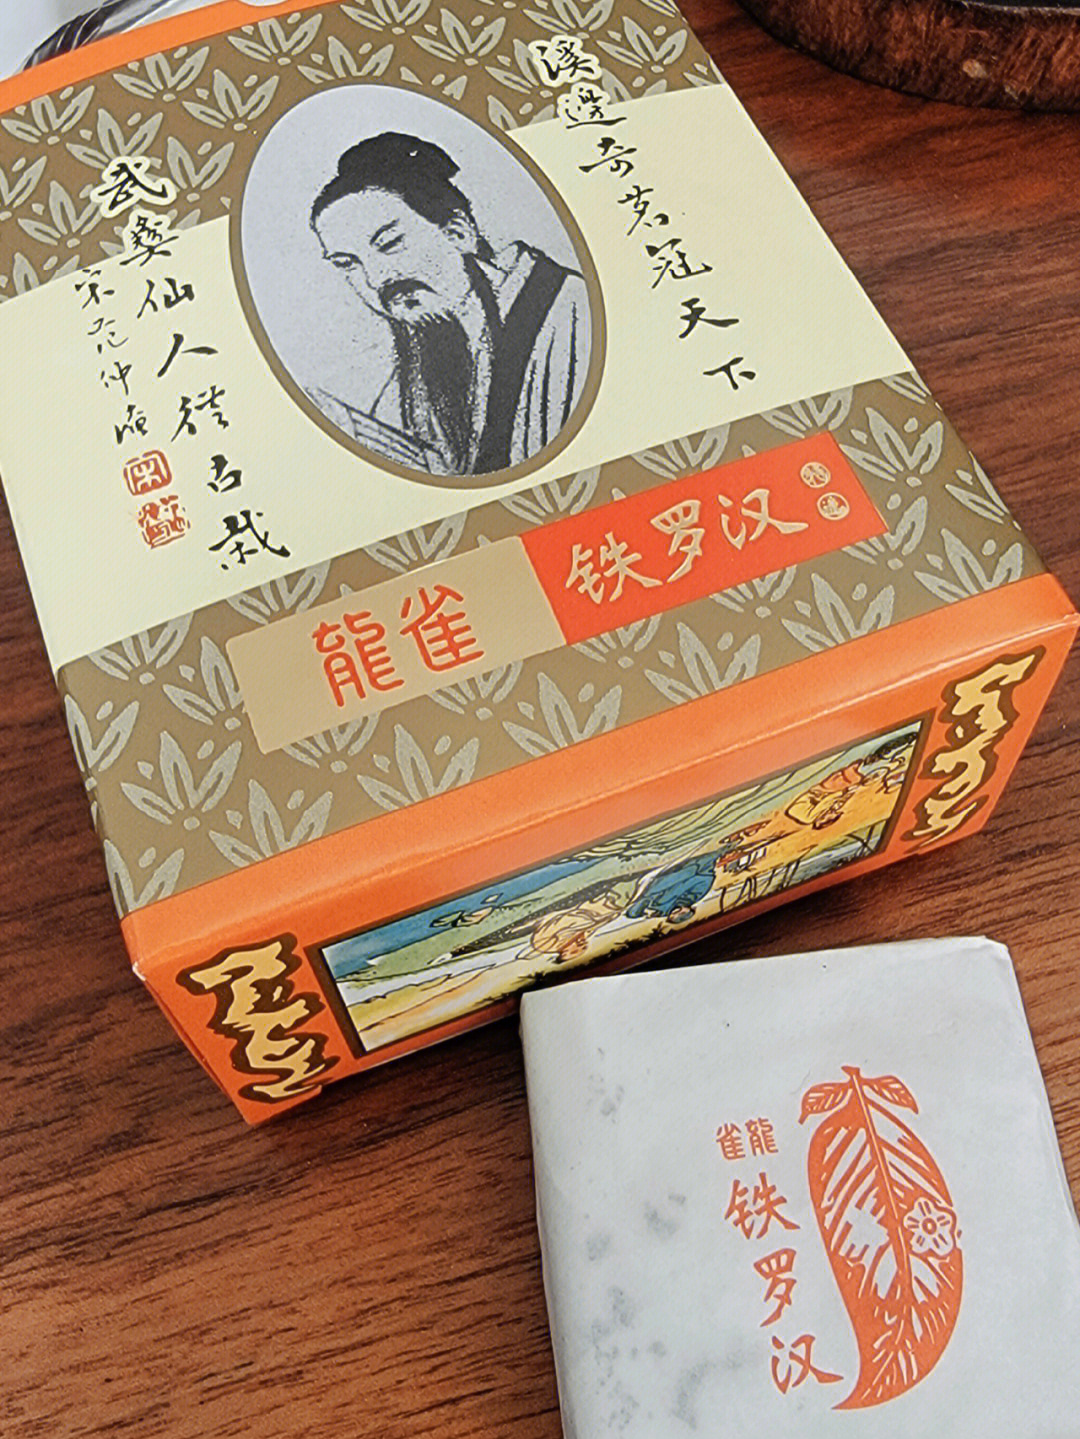 龙雀铁罗汉茶价位图片